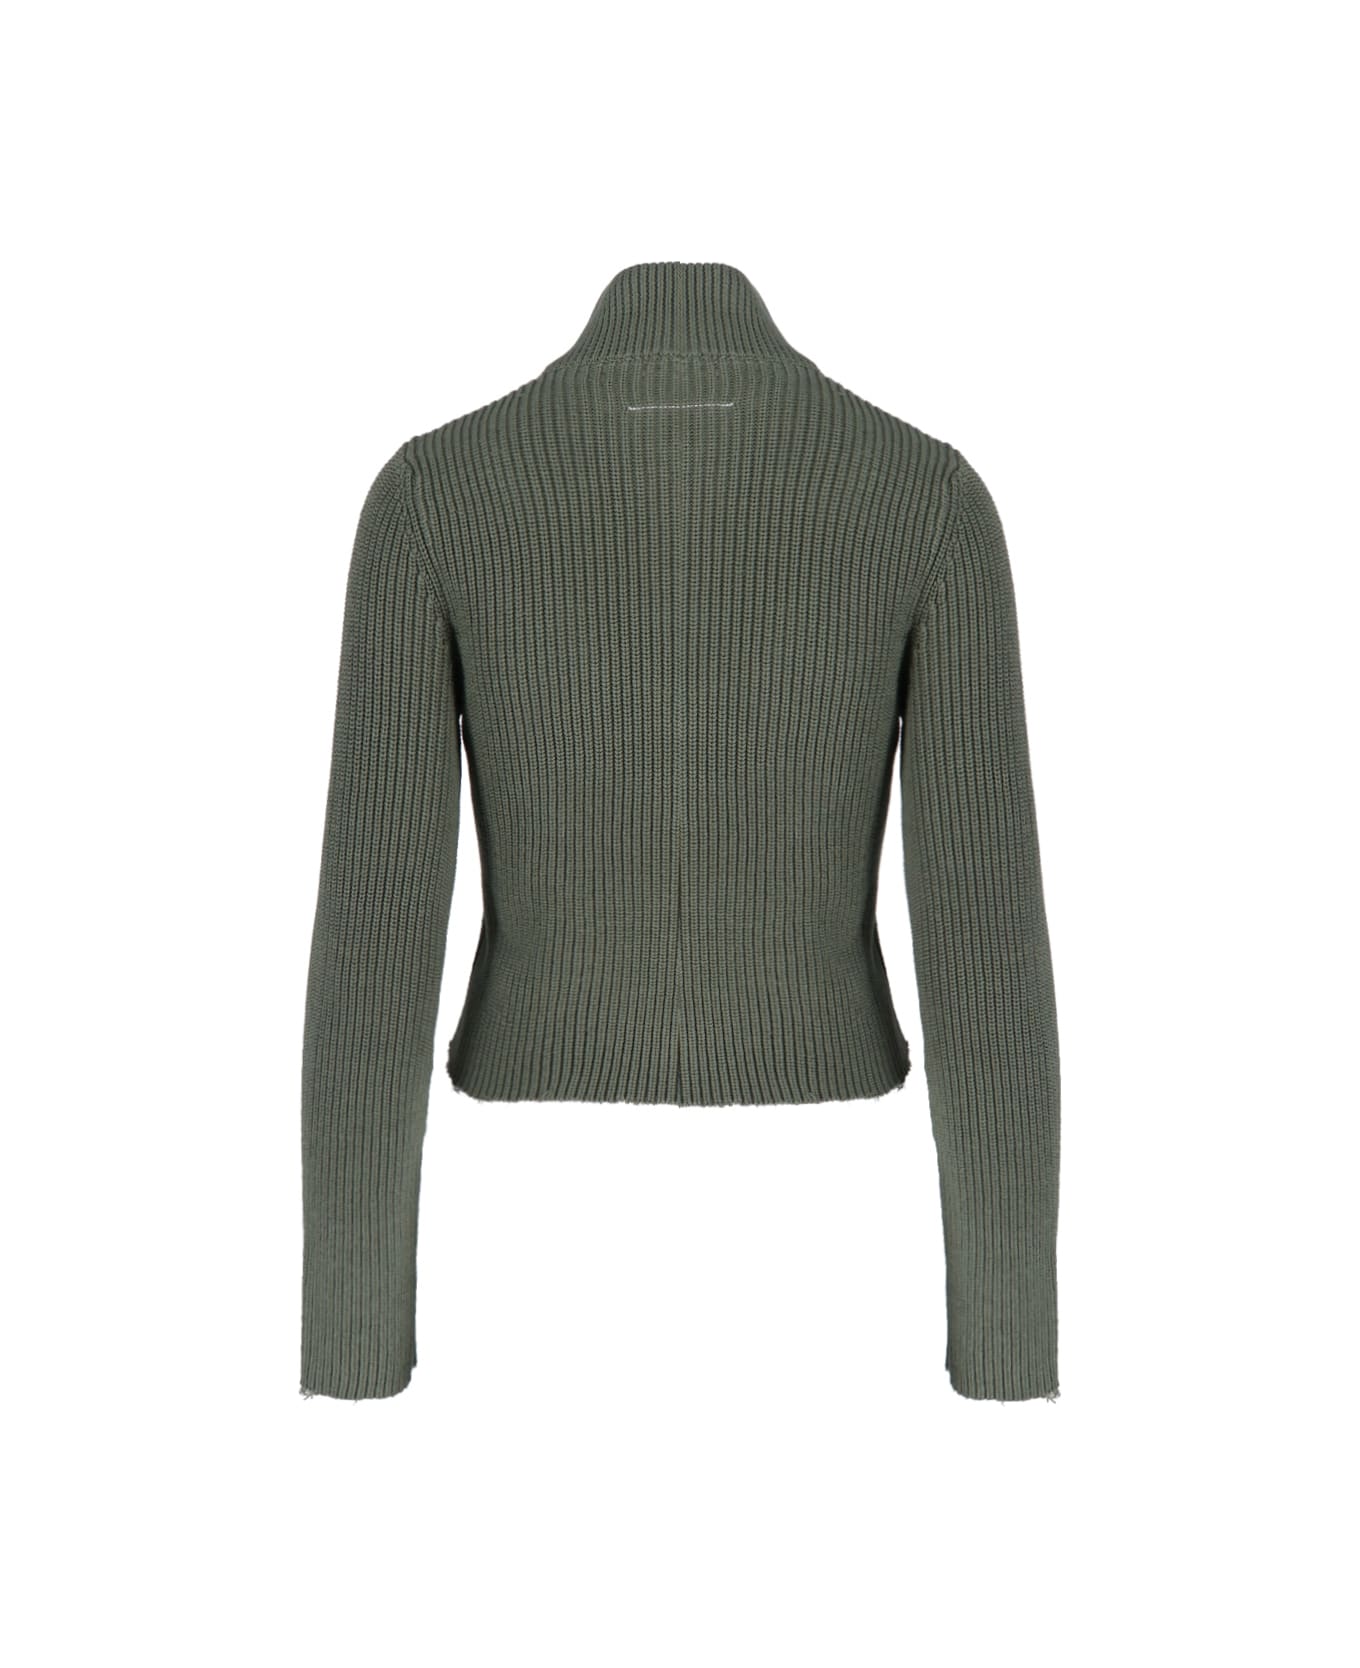 MM6 Maison Margiela Zip Sweater - Green ニットウェア